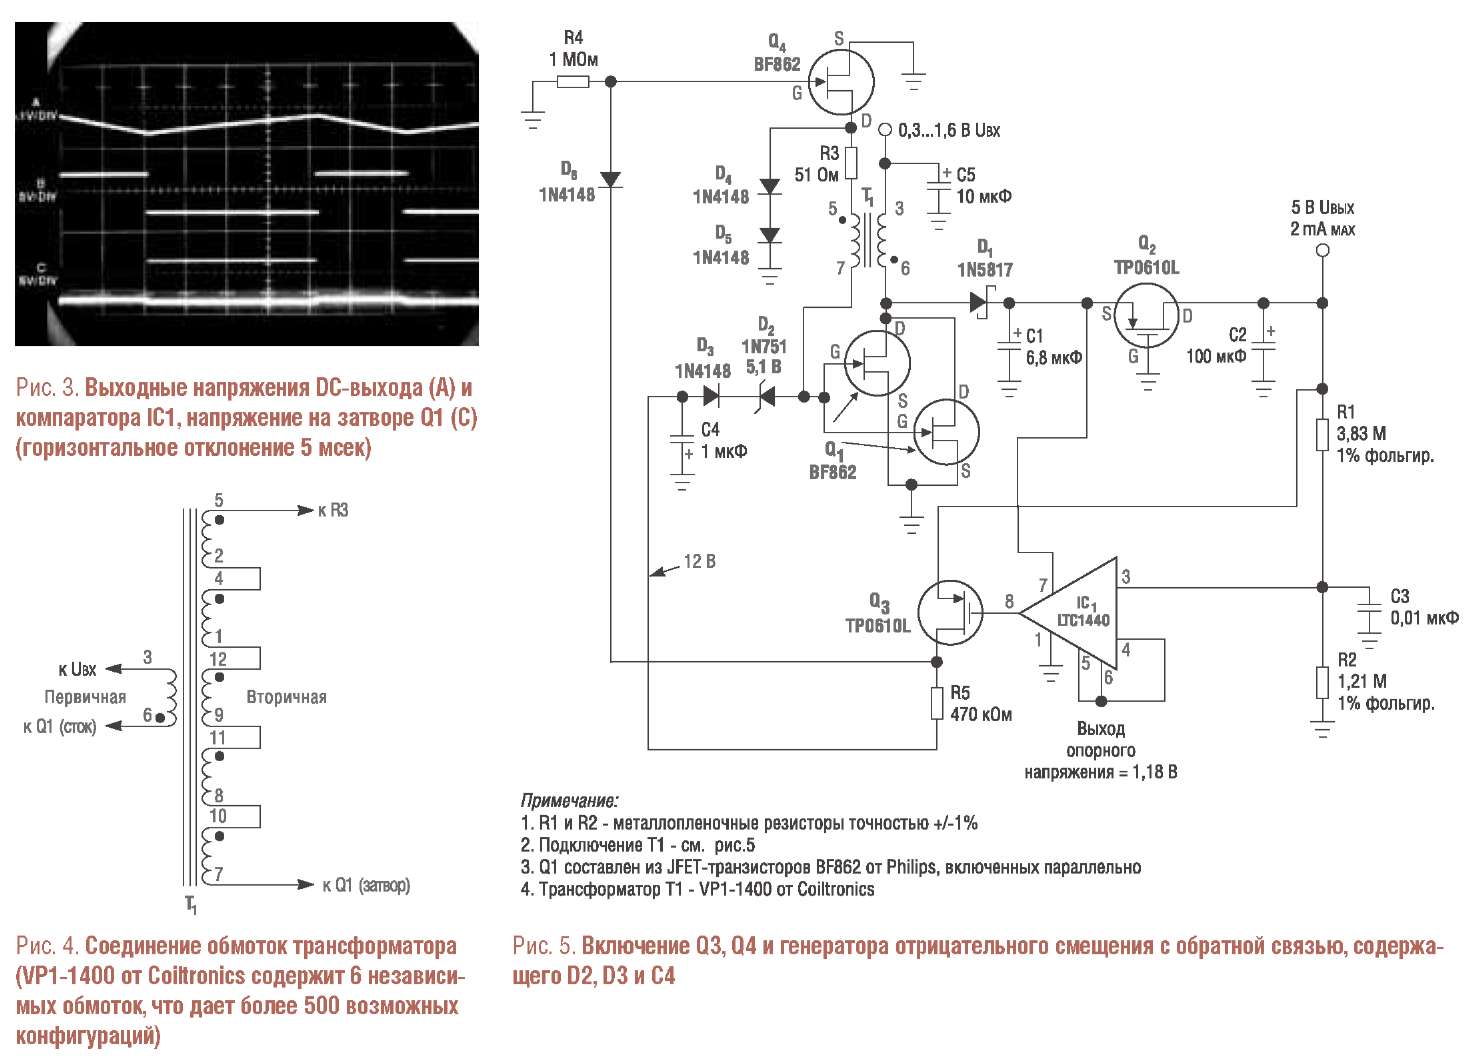 Использование пары подключенных параллельно транзисторов JFET